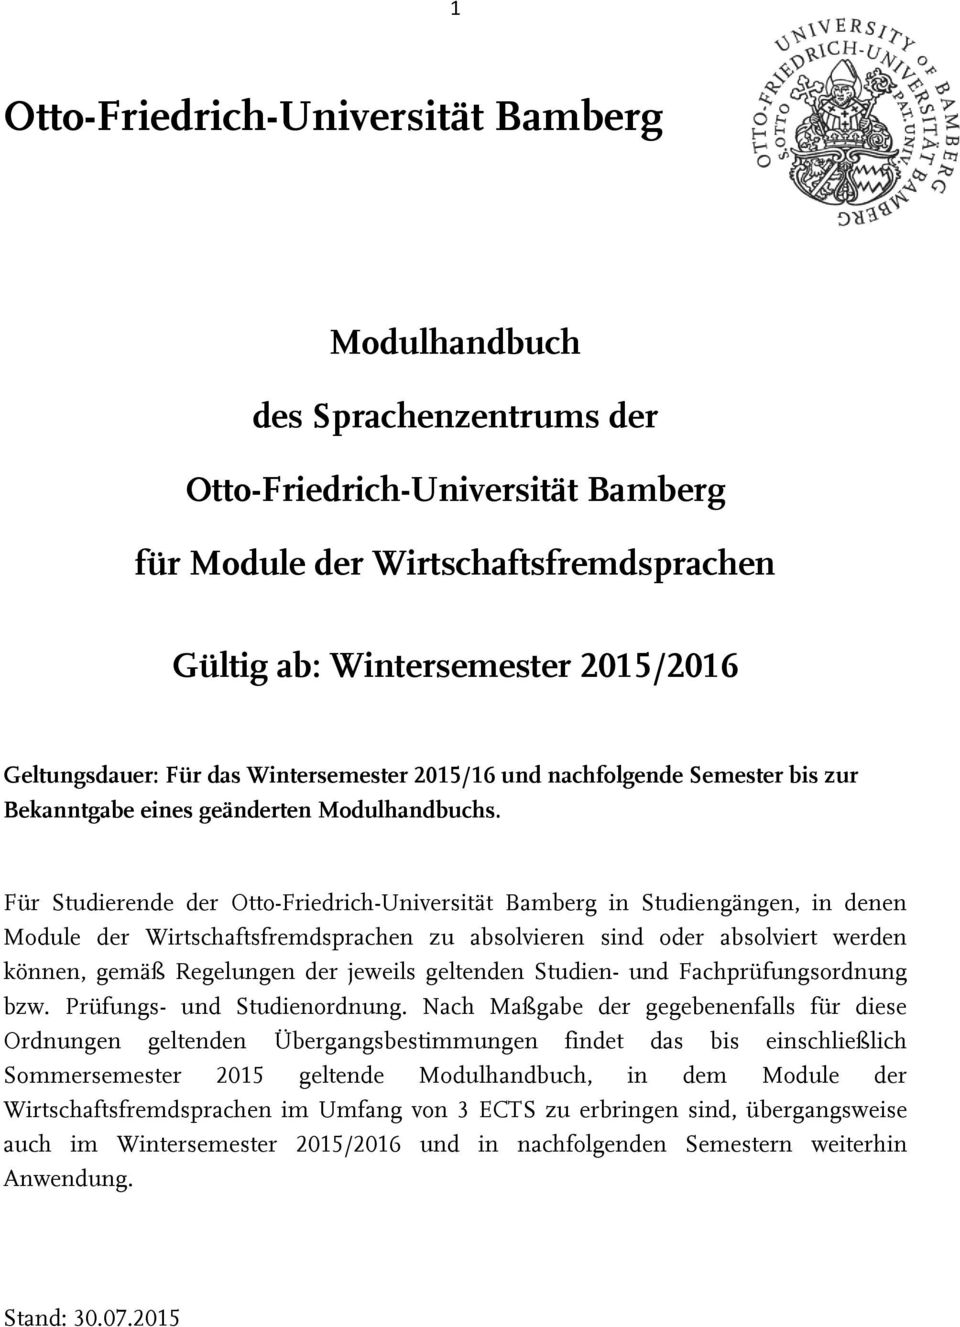 Für Studierende der Otto-Friedrich-Universität Bamberg in Studiengängen, in denen Module der Wirtschaftsfremdsprachen zu absolvieren sind oder absolviert werden können, gemäß Regelungen der jeweils